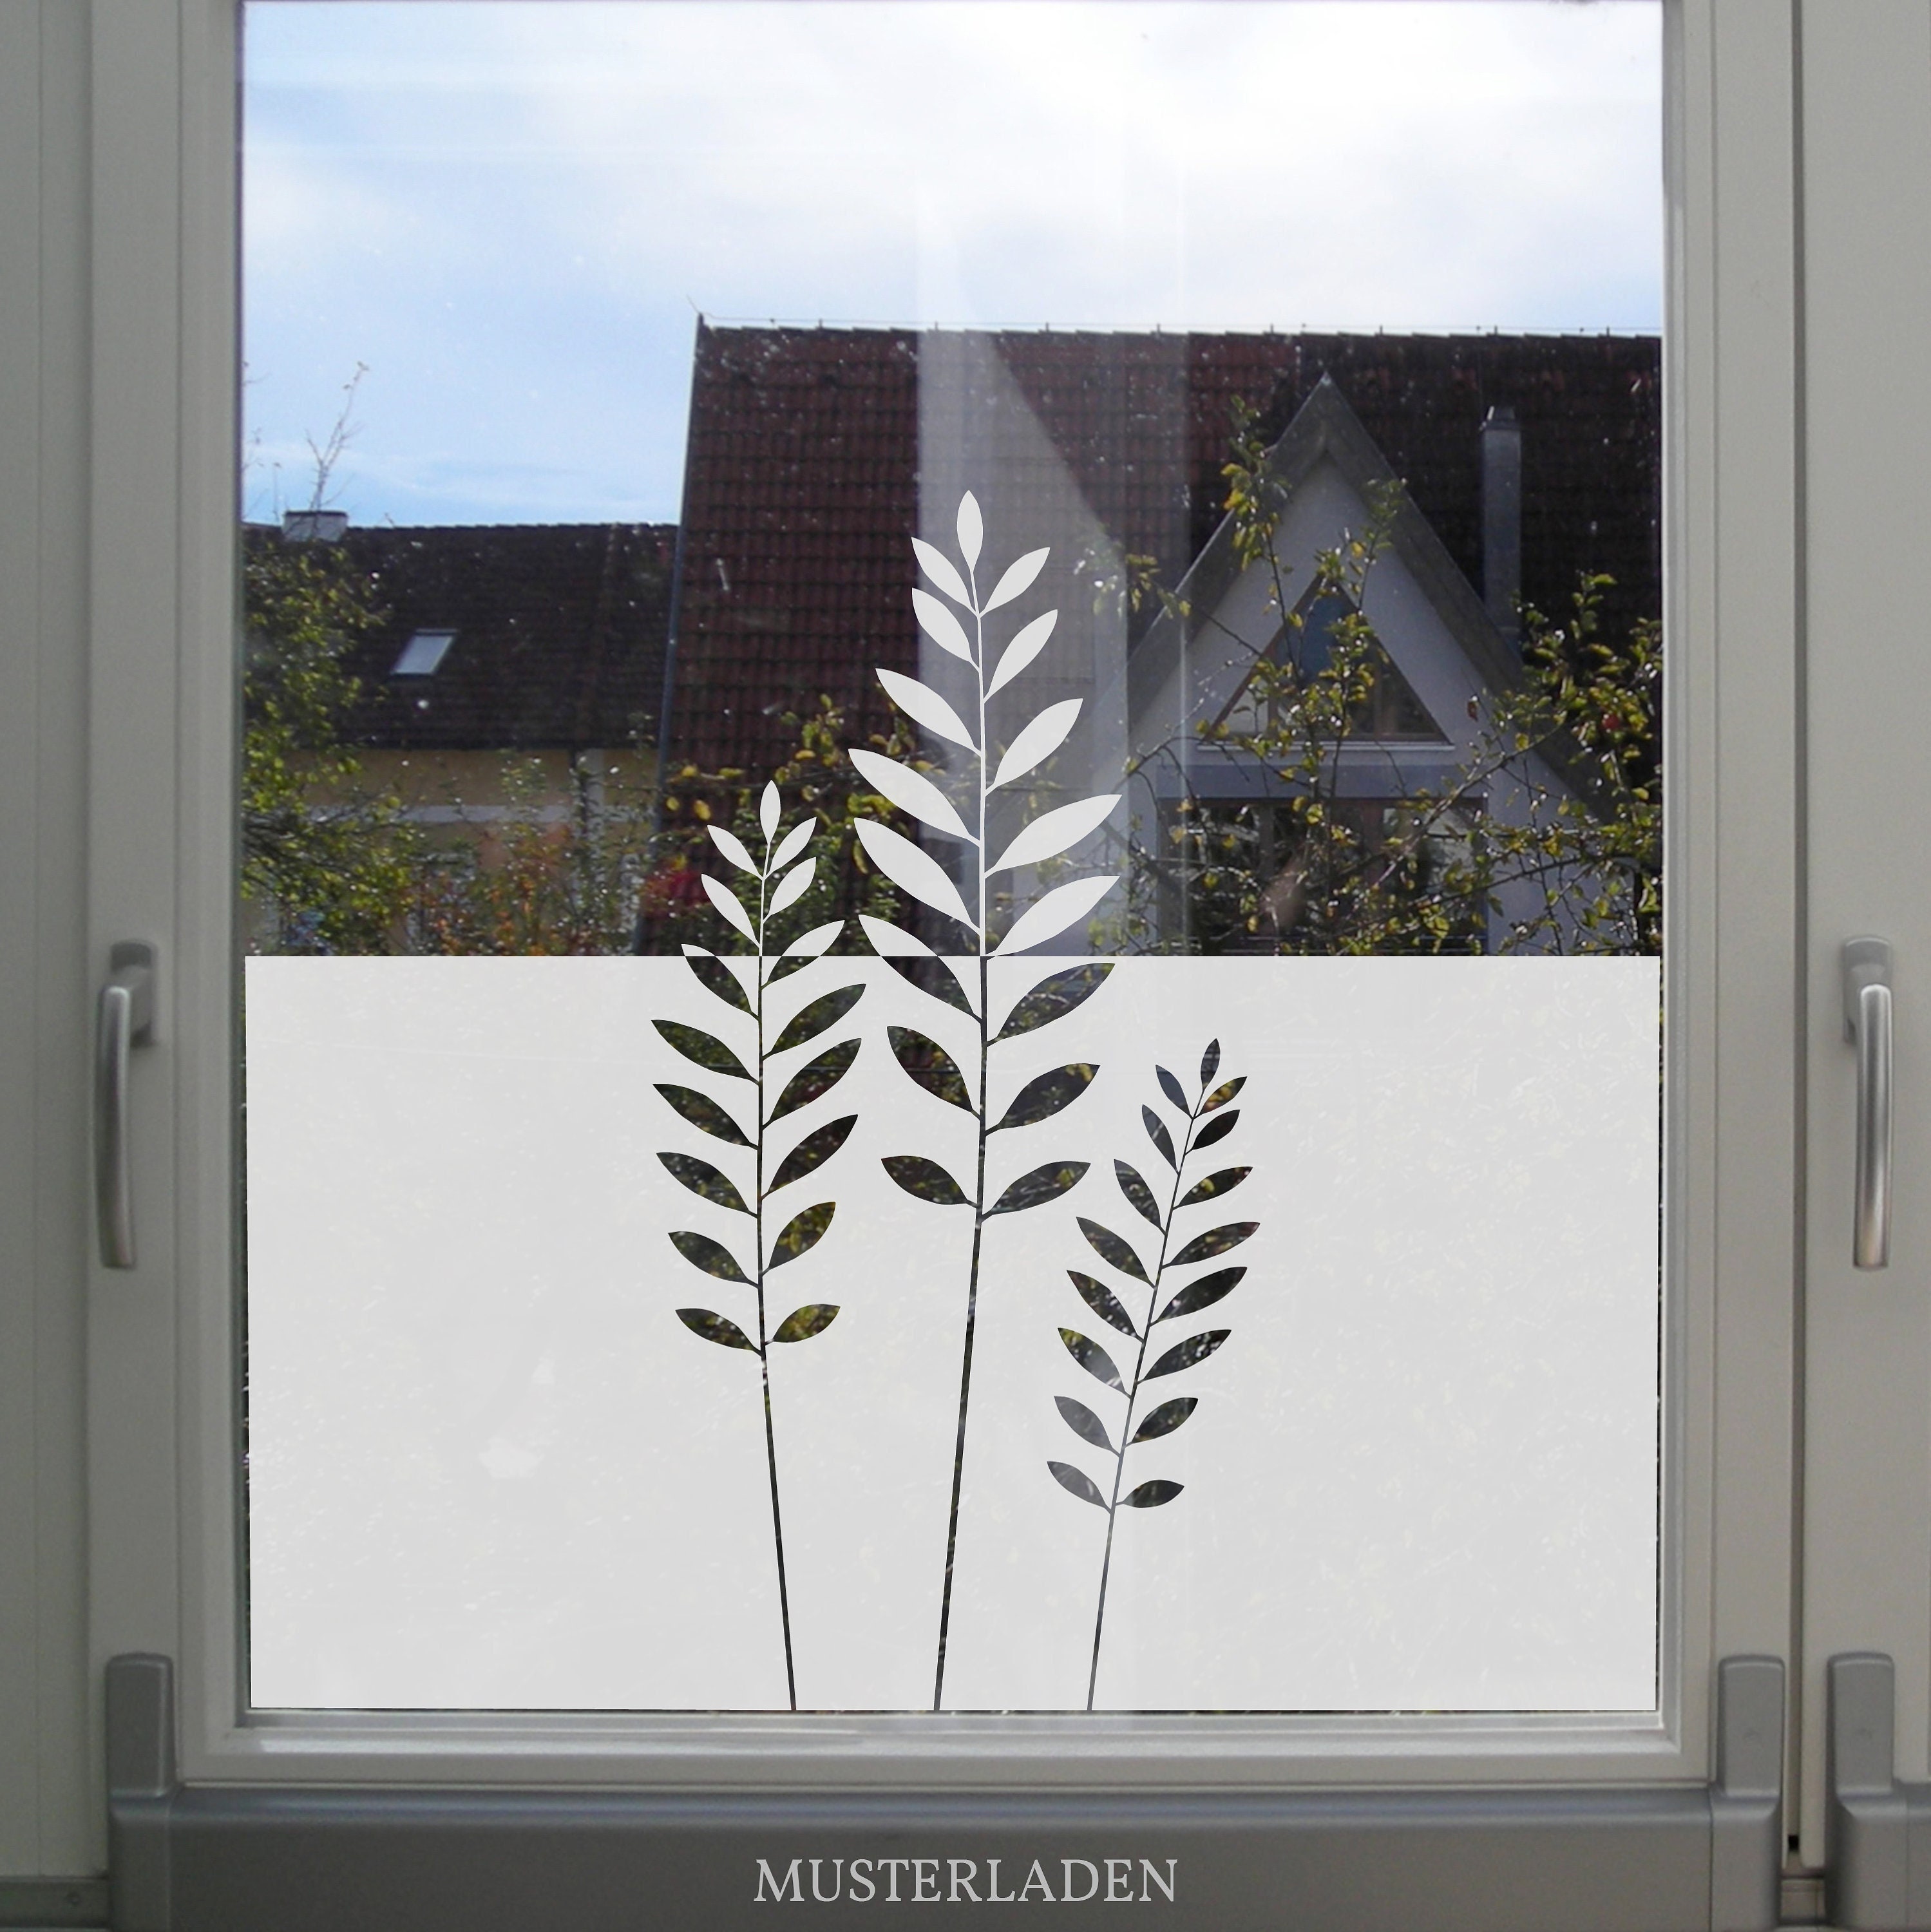 Fensterfolie Sichtschutz Folie Glasdekorfolie Stripes   Fenstersichtschutz, Fensterfolie sichtschutz, Fensterfolie